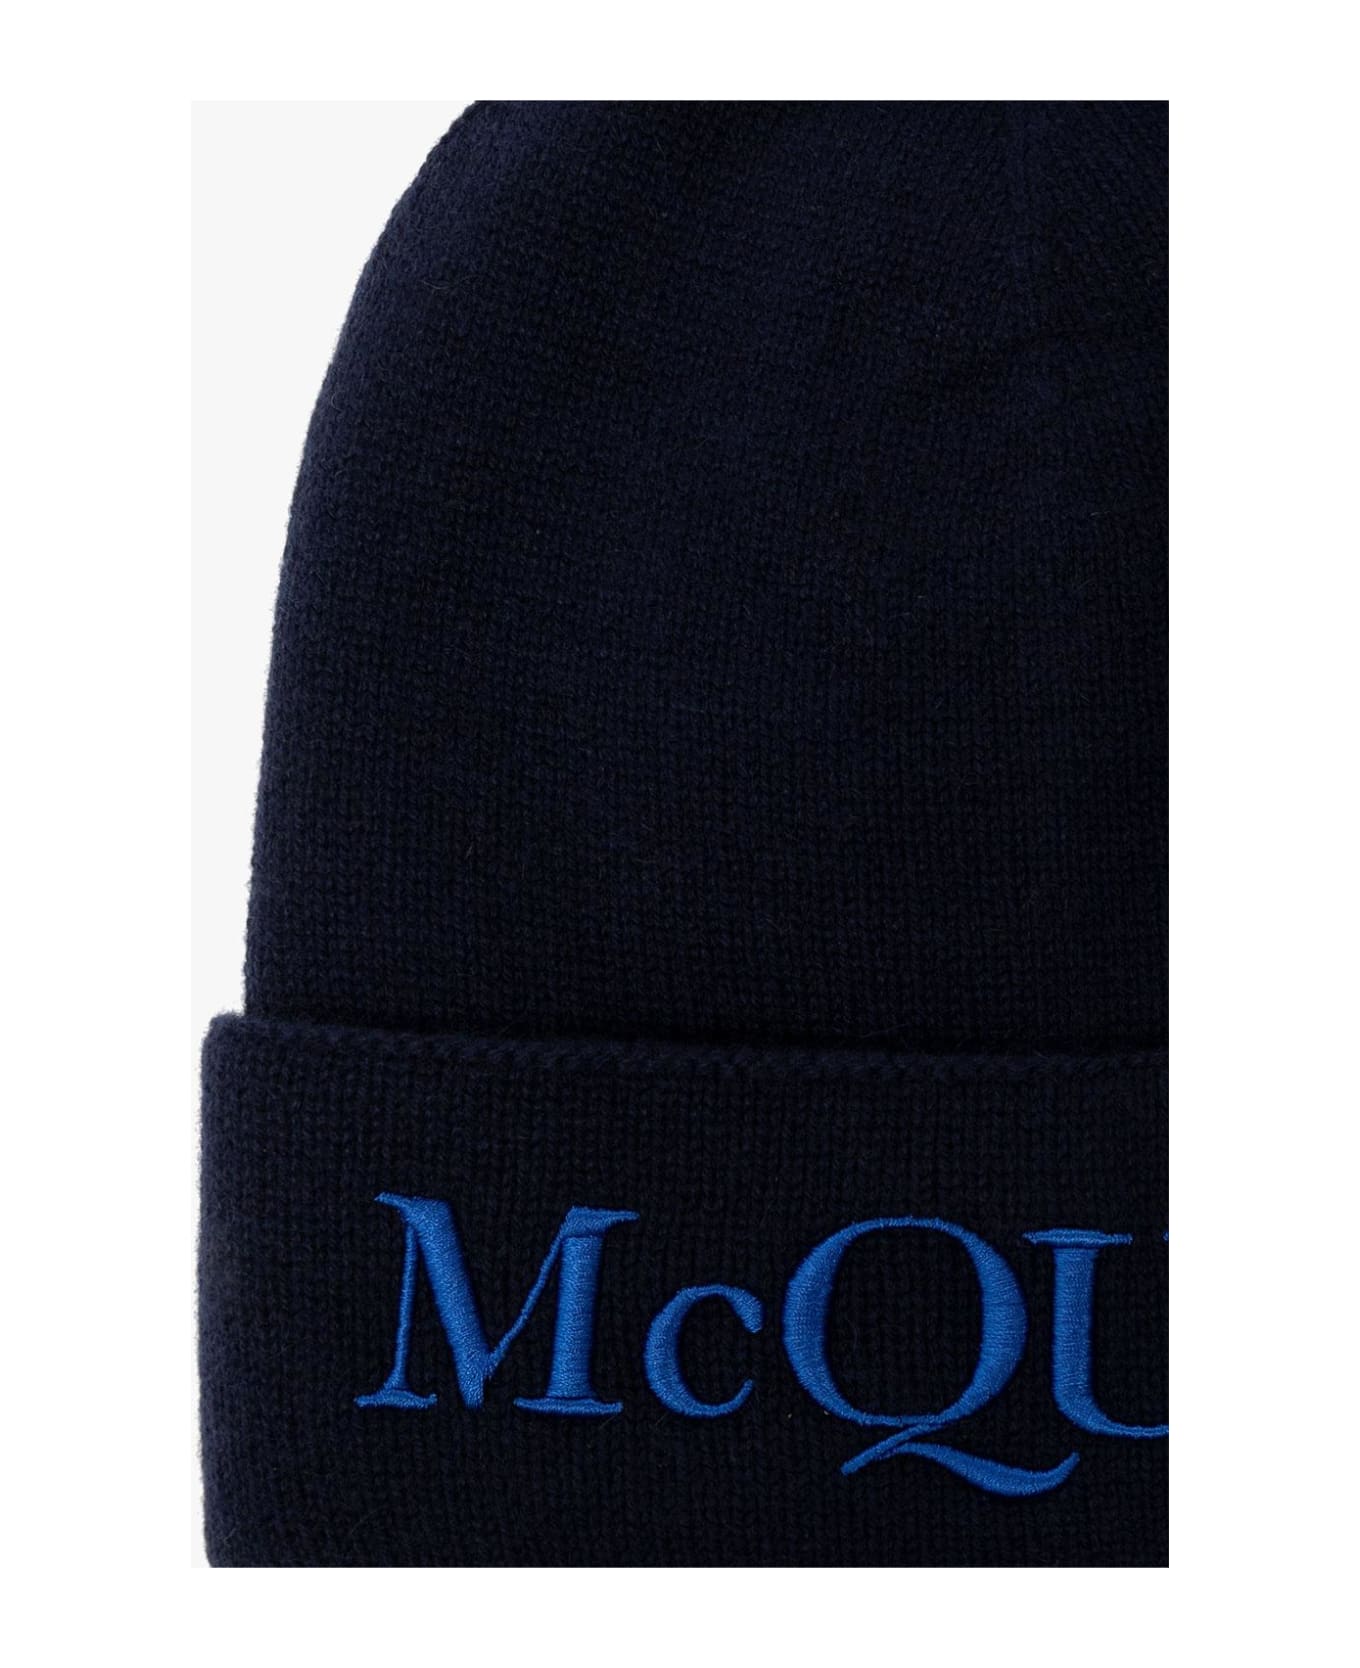 Alexander McQueen Cashmere Beanie With Logo - NAVY 帽子